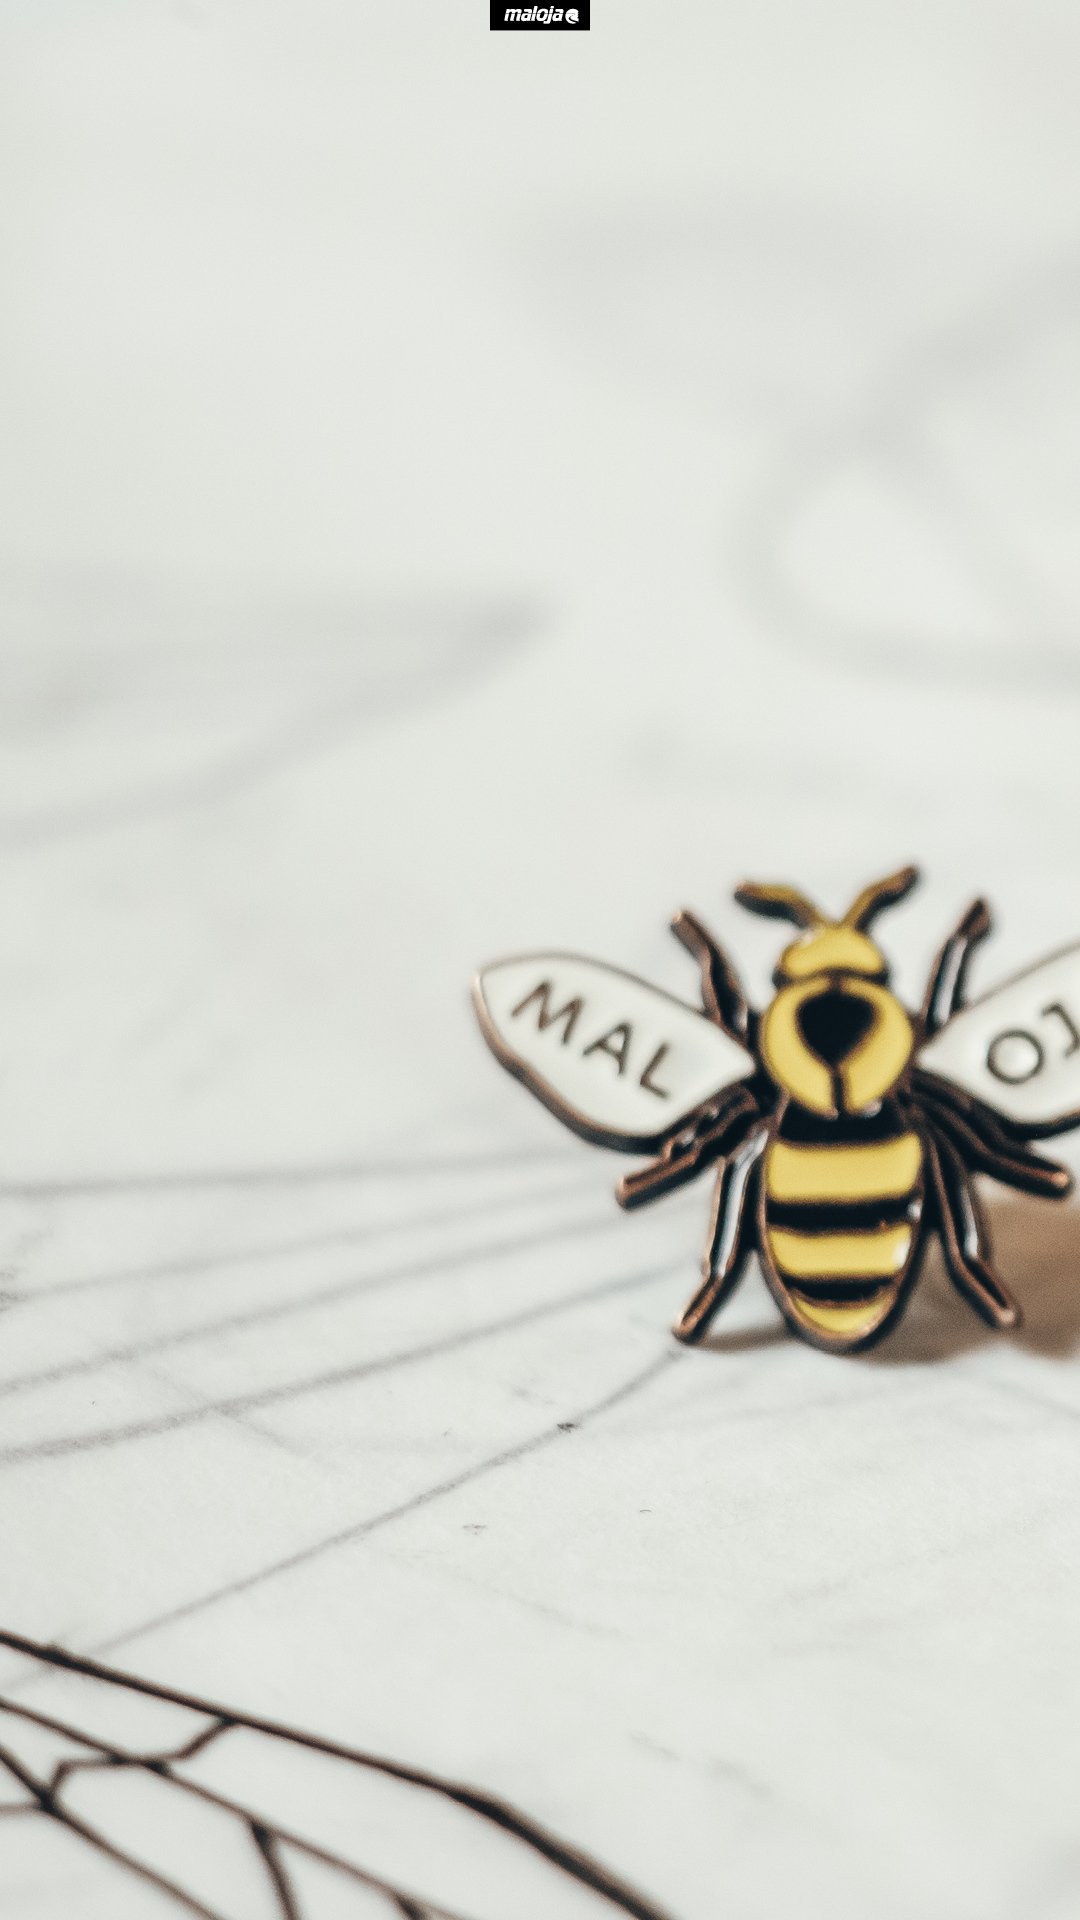 Iphone - Honeybee , HD Wallpaper & Backgrounds